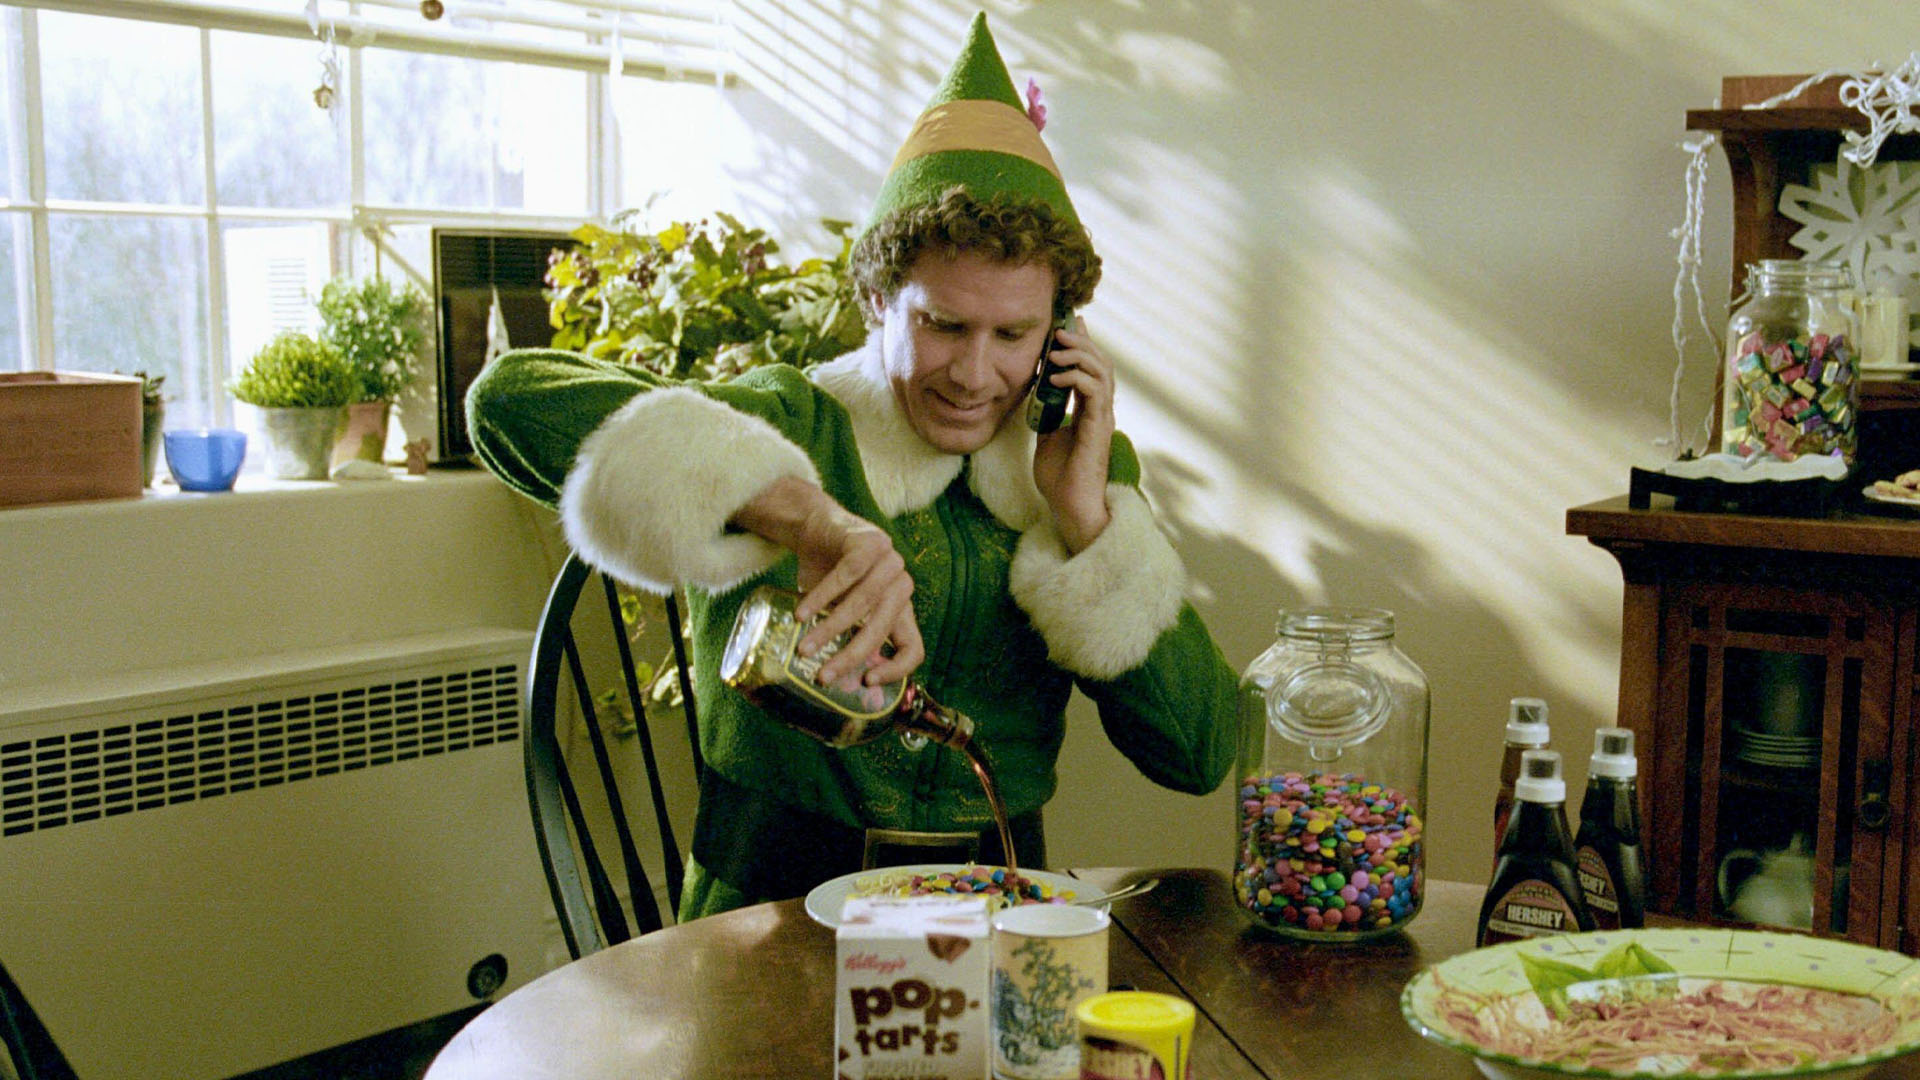 Buddy the Elf Spaghetti : Comment puis-je préparer la friandise de Noël ?
